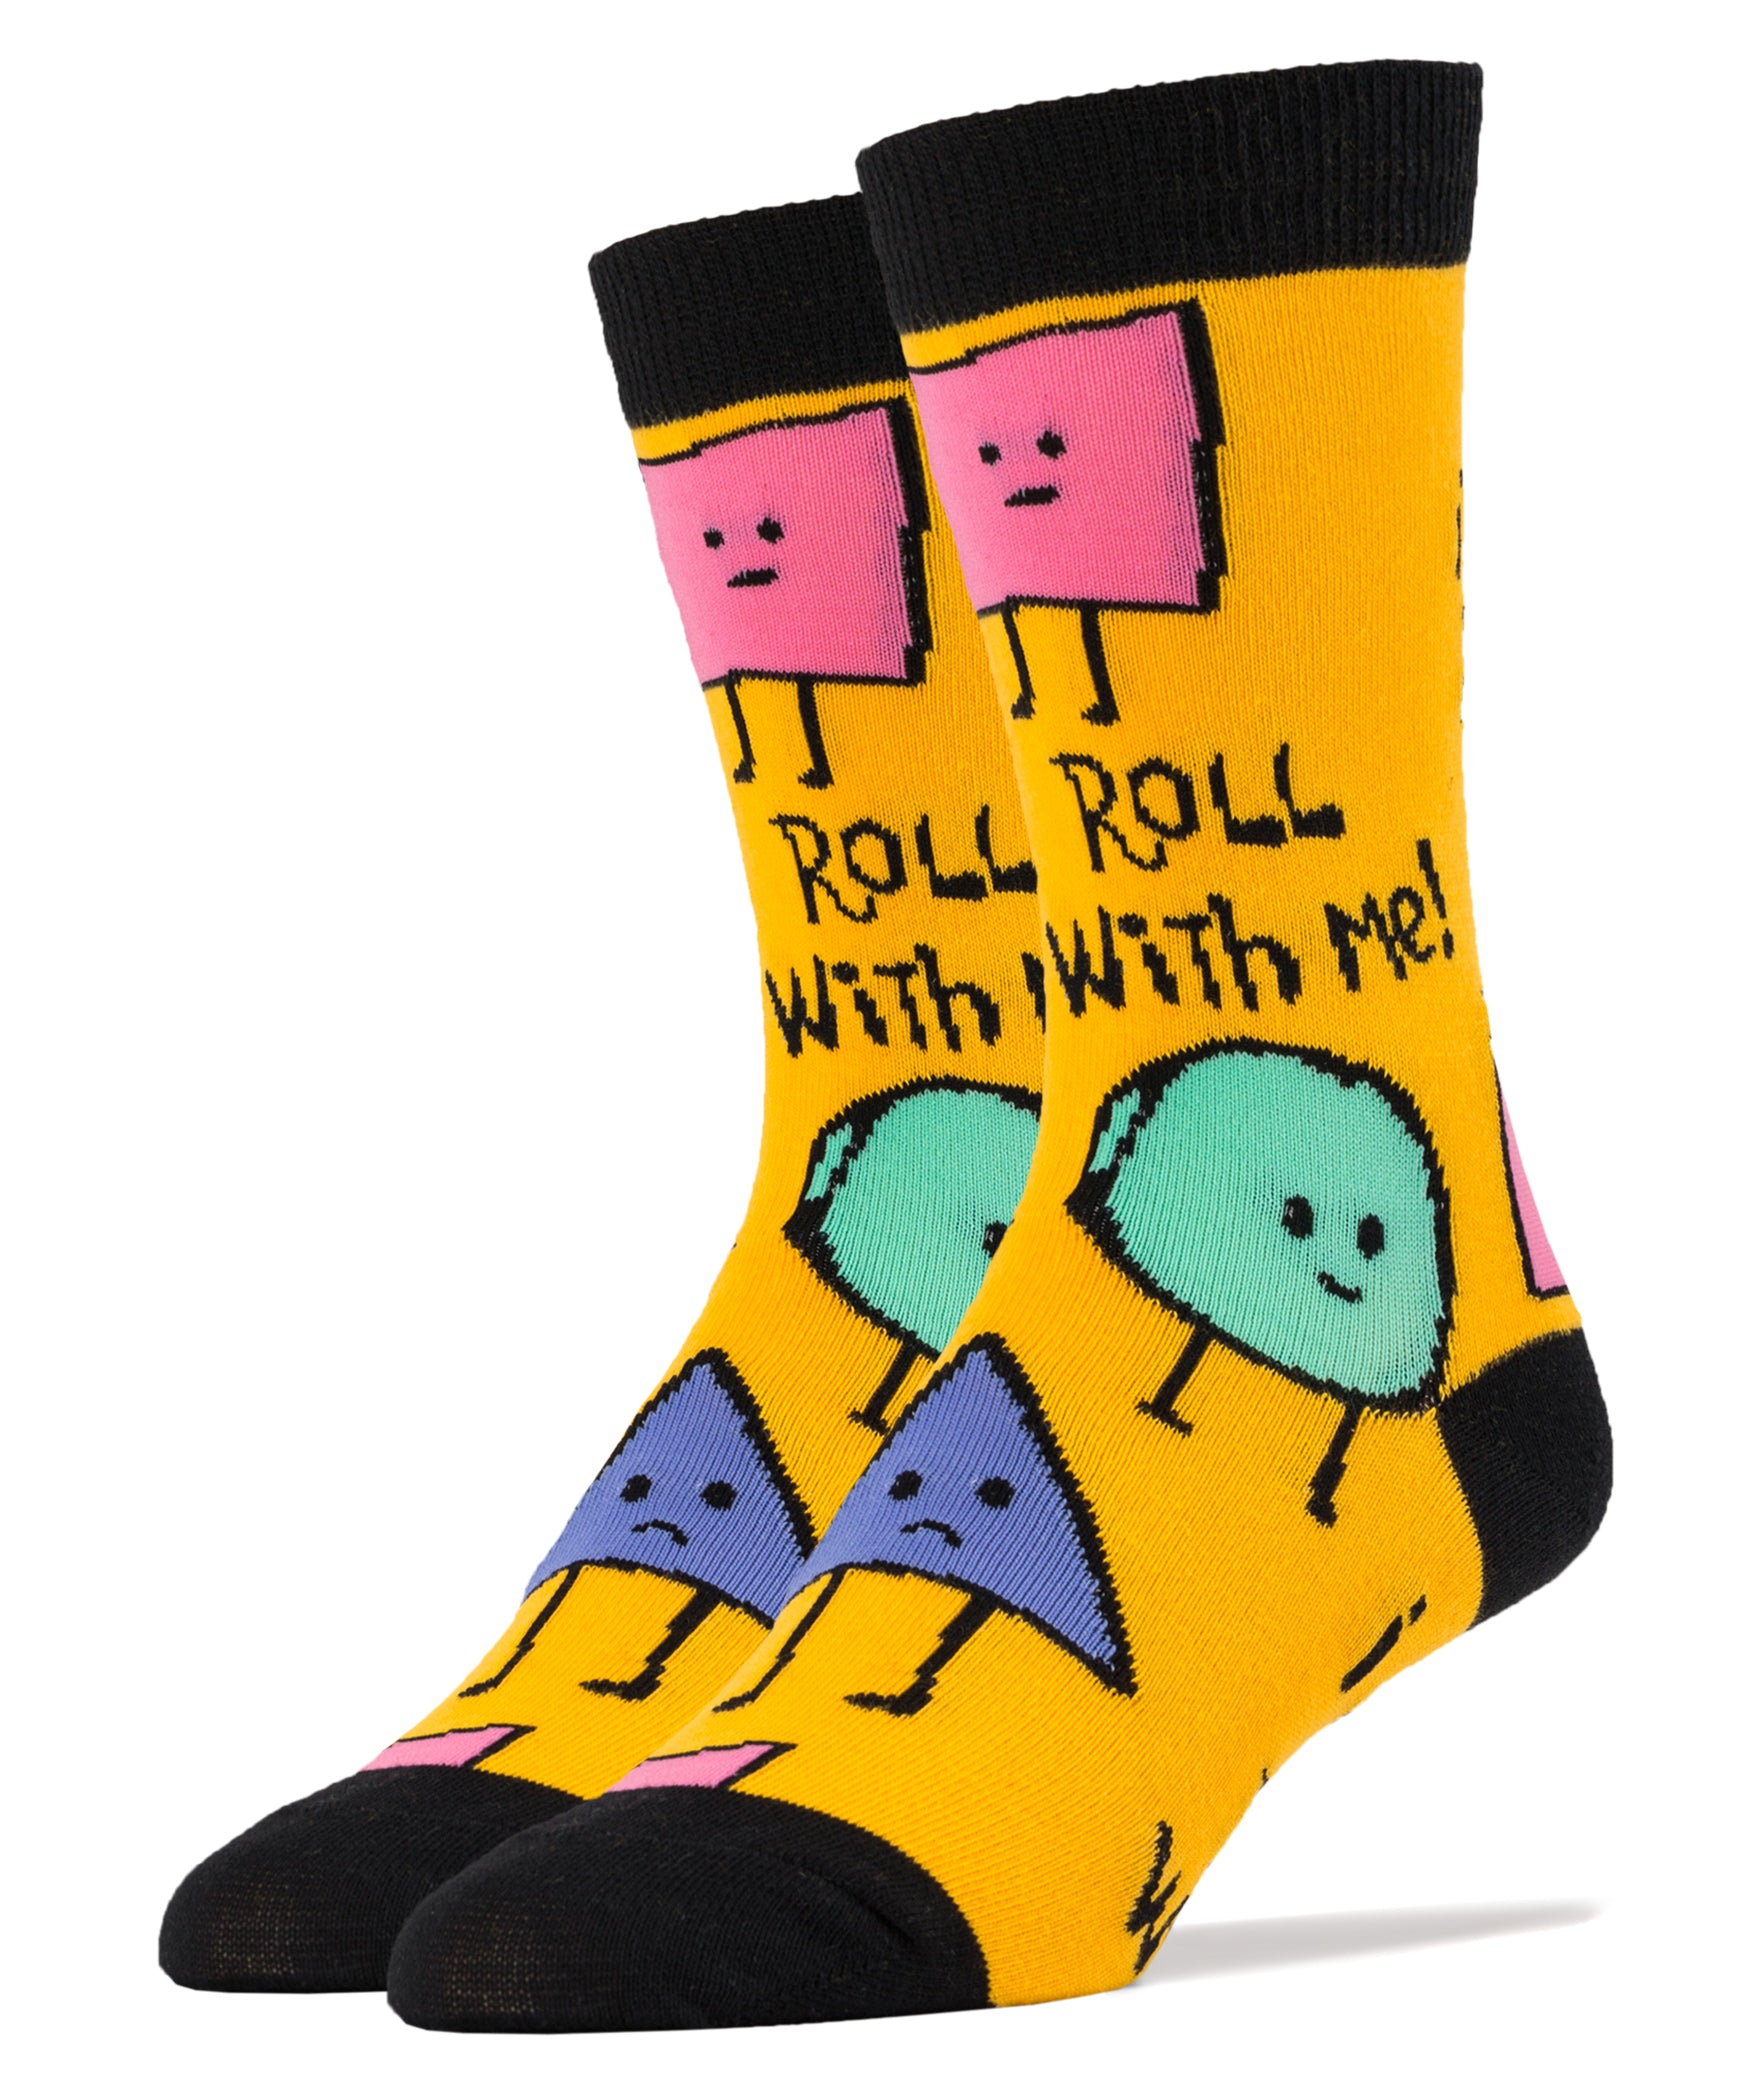 Roll With Me Socks | Novelty Crew Socks For Men